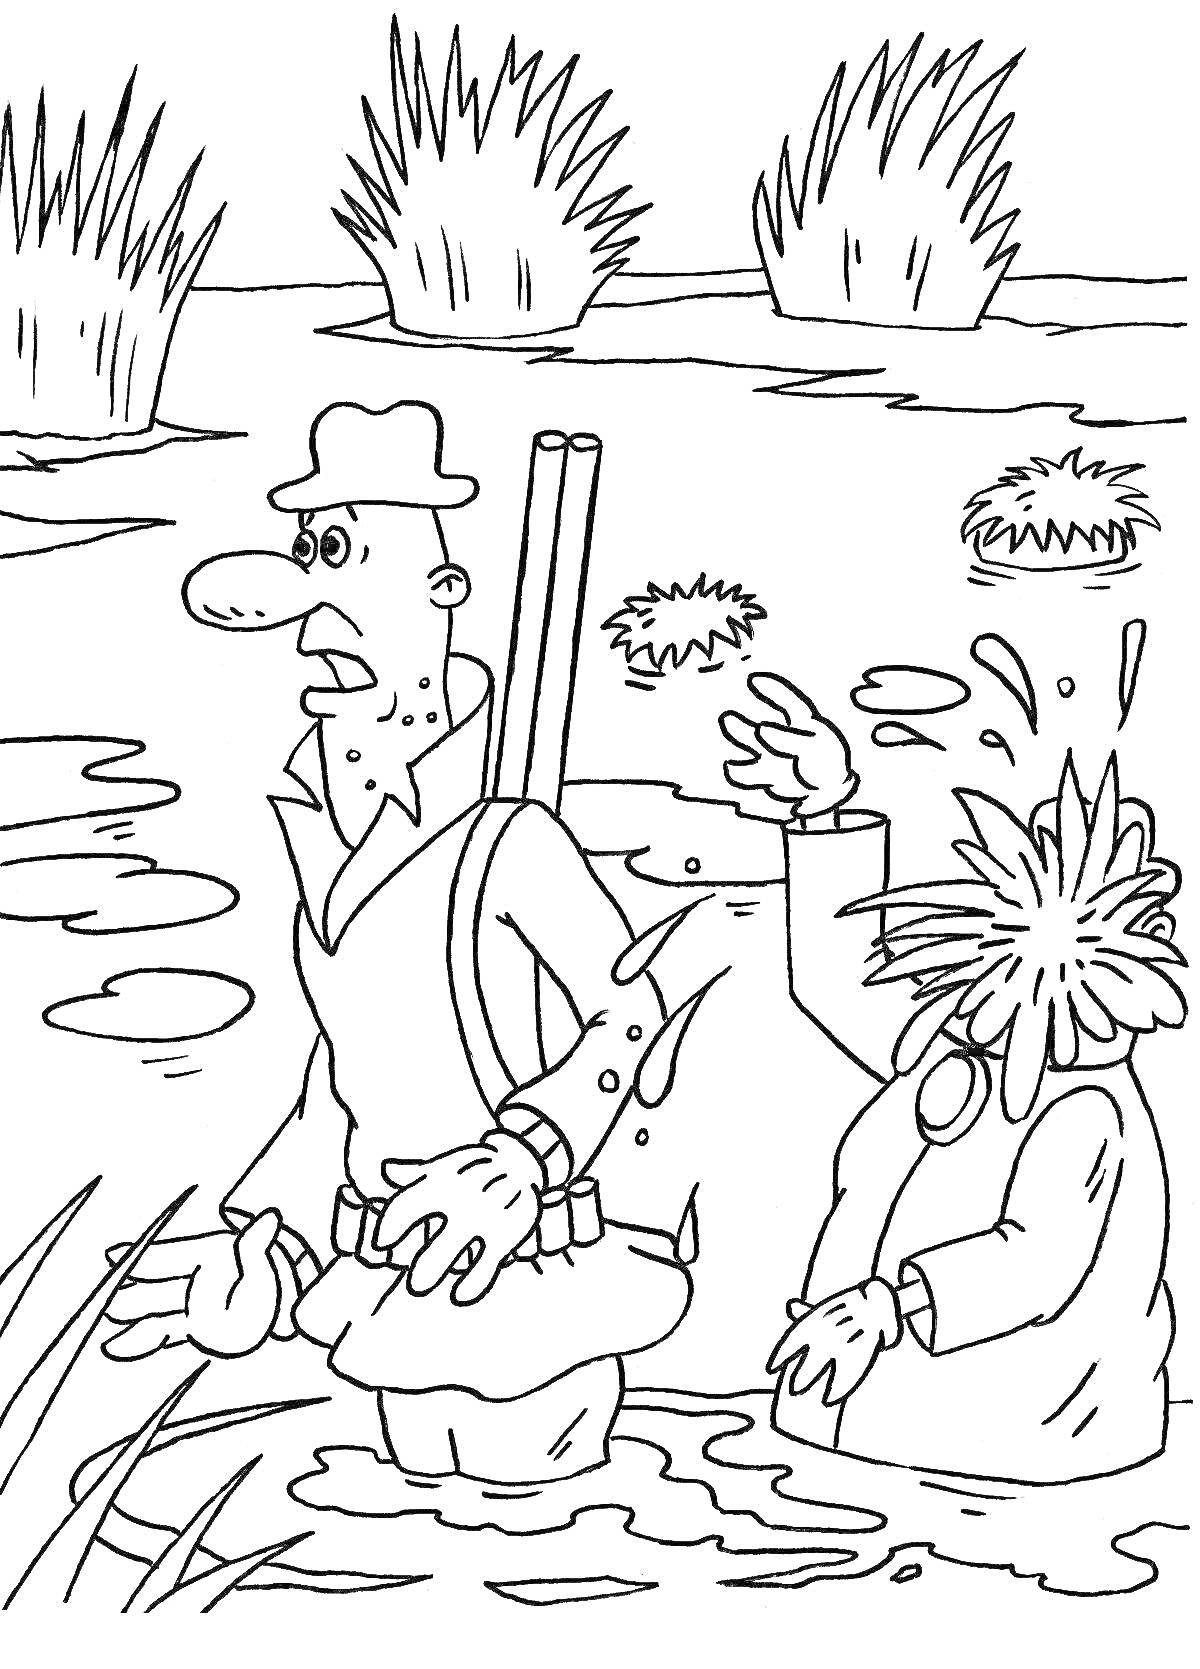 Раскраска Охота в болоте с персонажами Фунтиком и Дядюшкой Мокусом, заросли камыша, водоросли